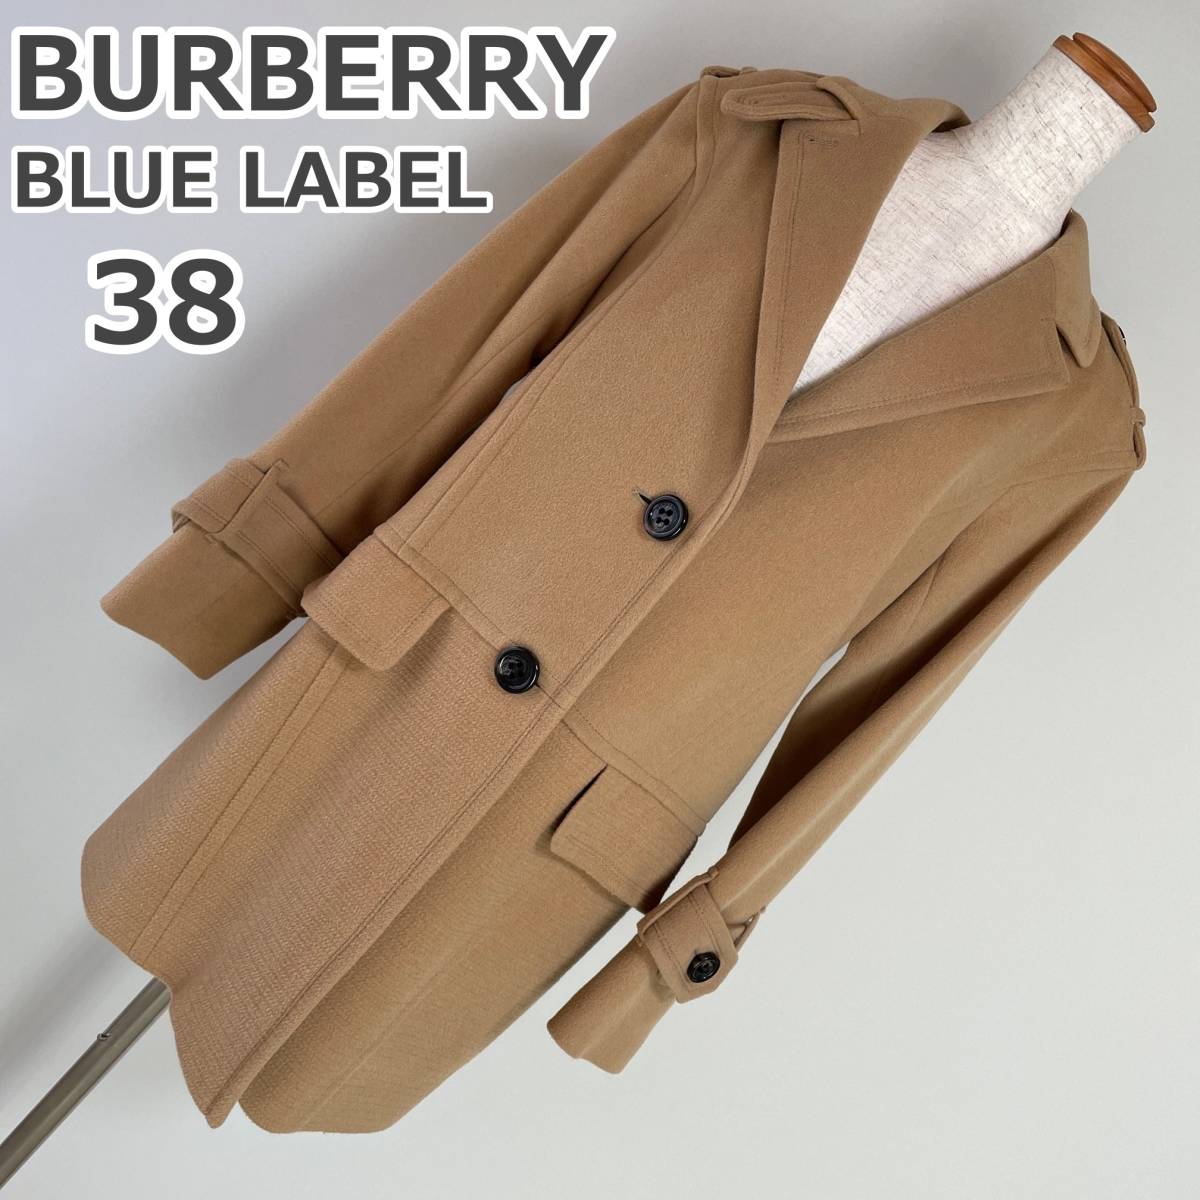 BURBERRY BLUE LABEL サイズ38 茶色 レディース コート 冬物 女性用 バーバリー ブルーレーベル 三陽商会 Mぐらい 9号ぐらい